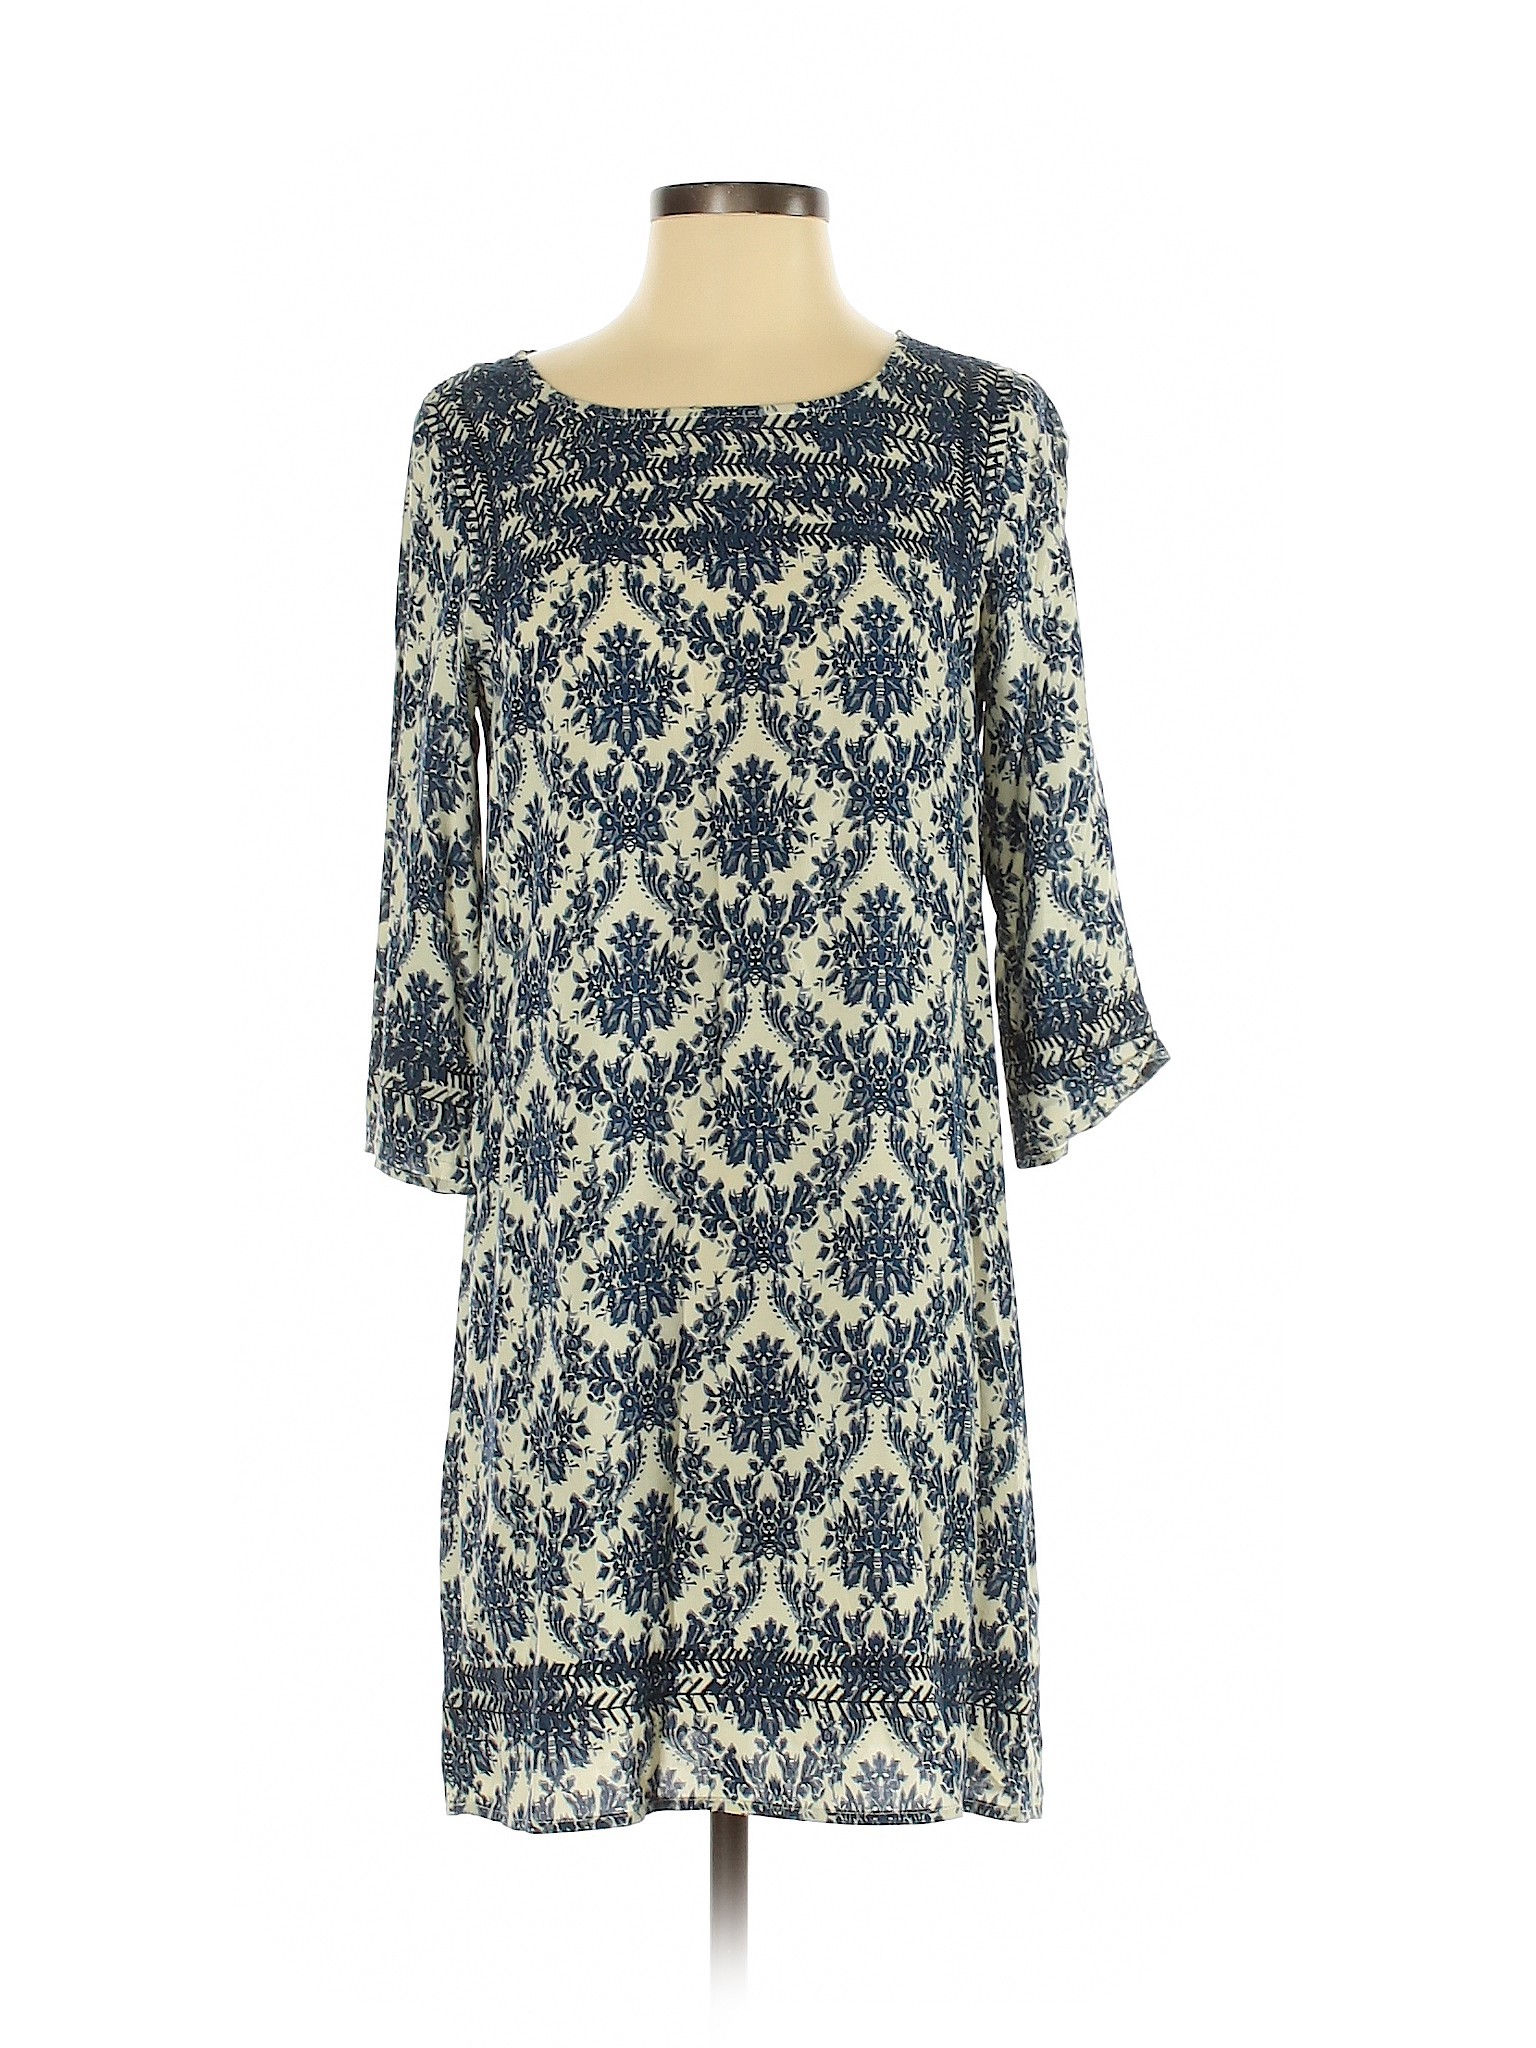 THML Women Blue Casual Dress S | eBay